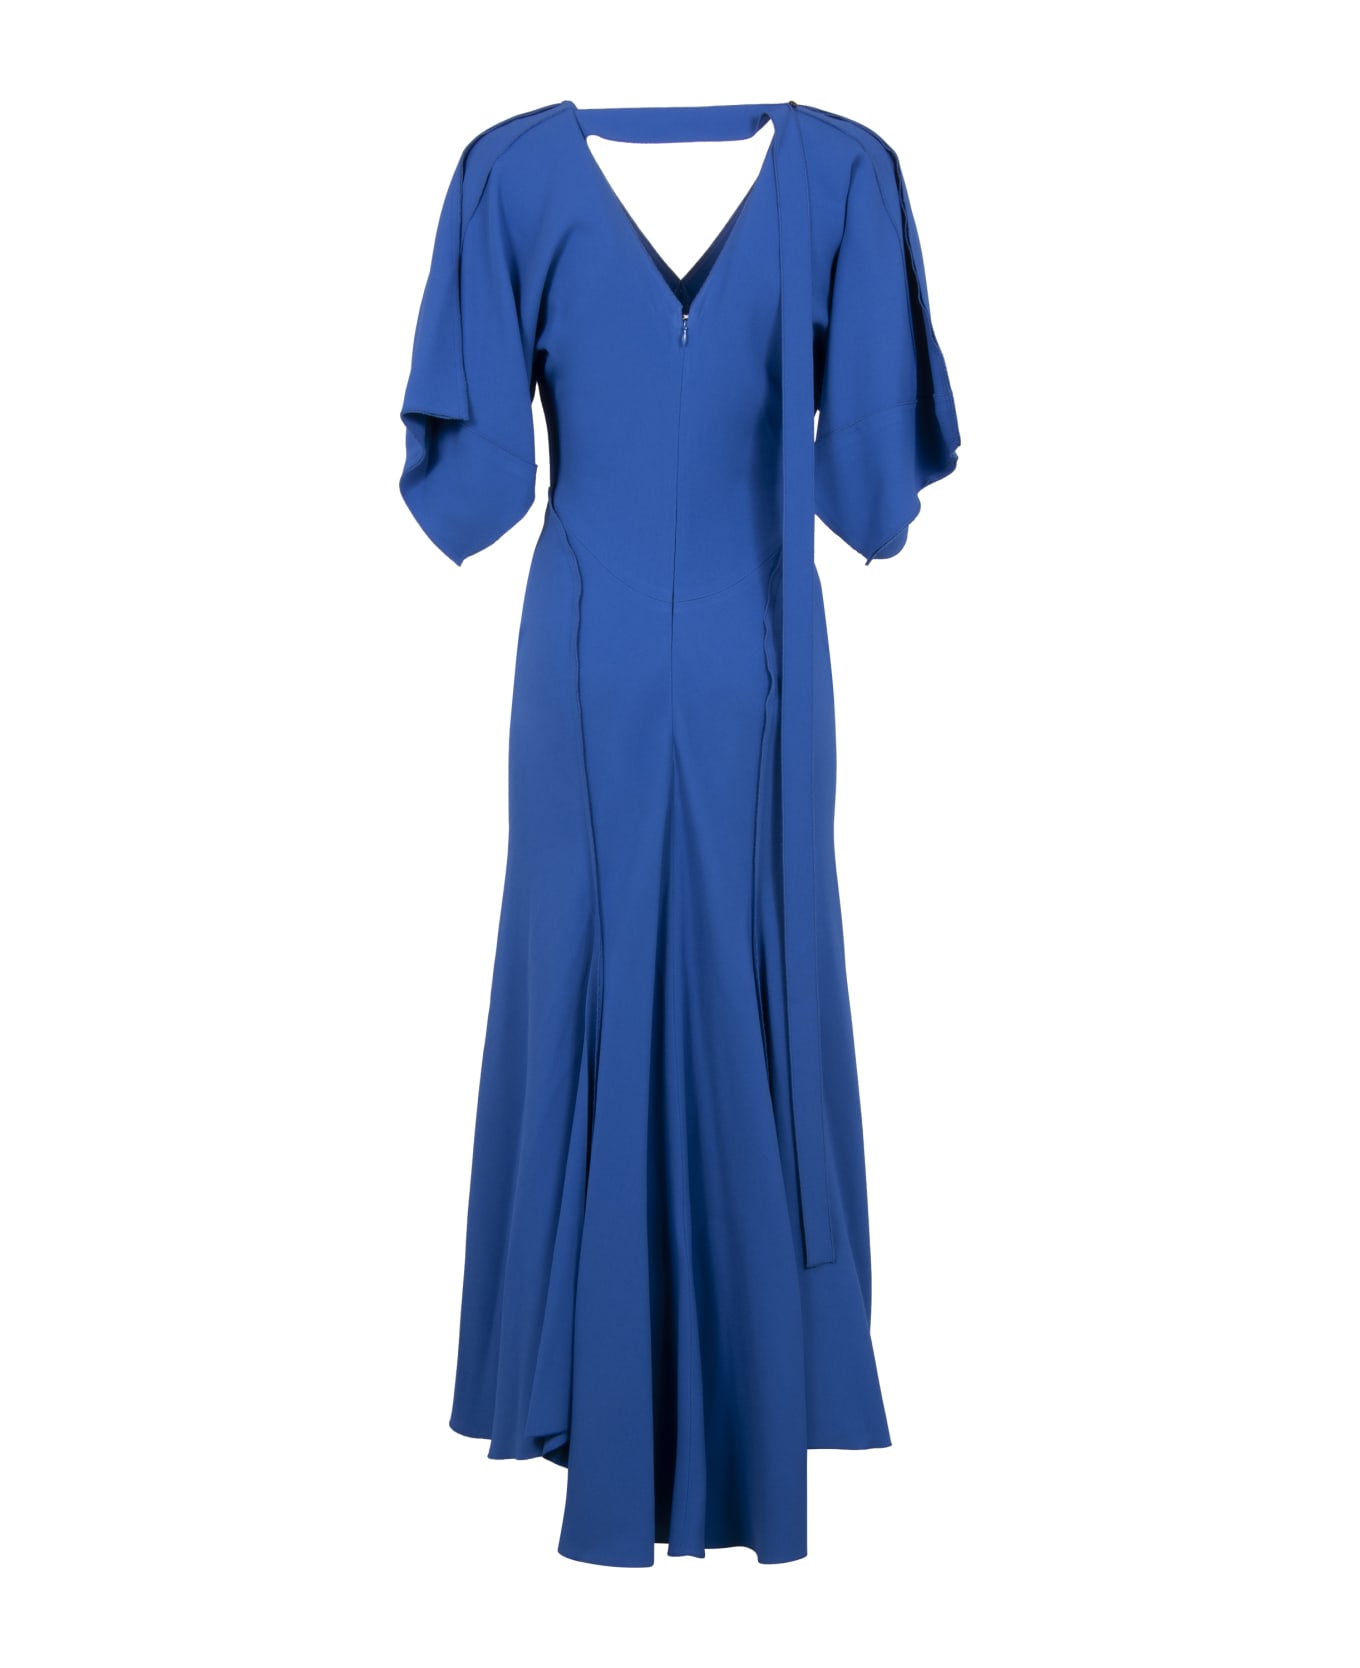 Victoria Beckham Cady Dress - blue